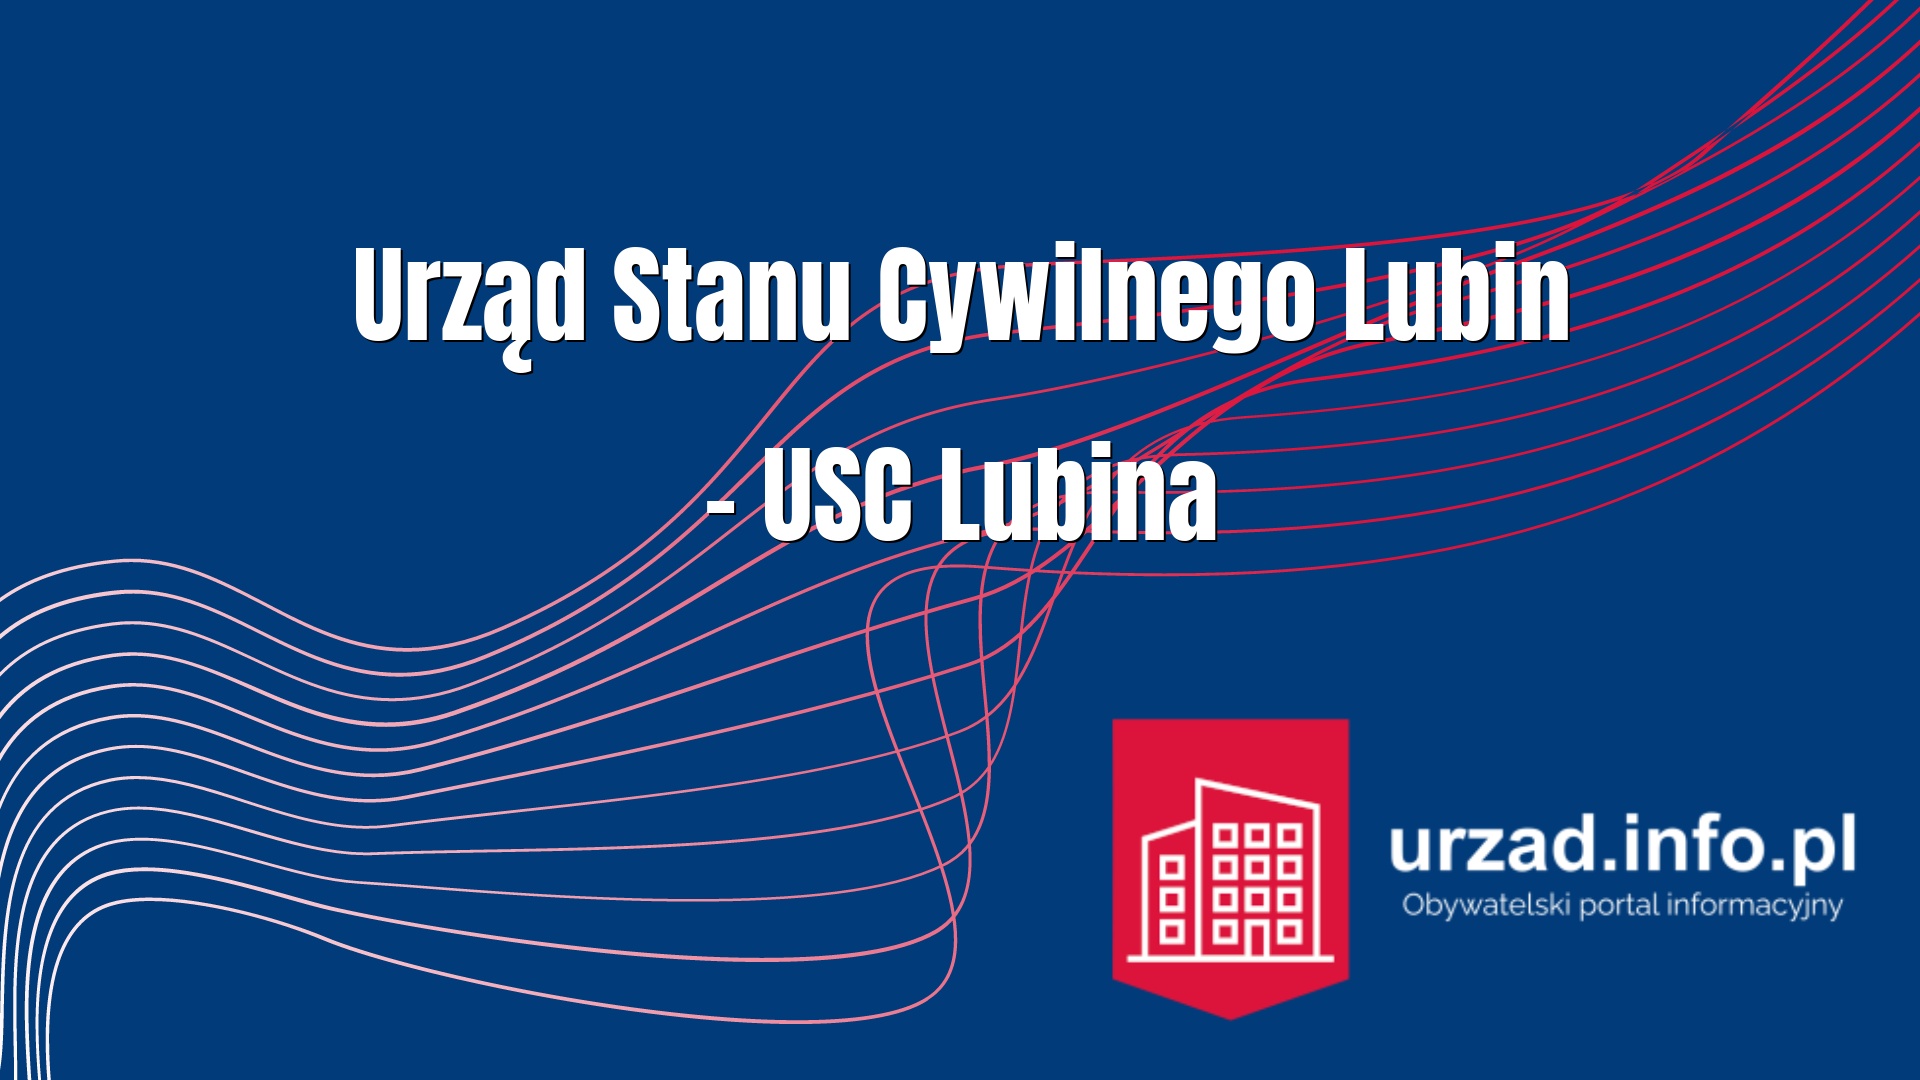 Urząd Stanu Cywilnego Lubin – USC Lubina